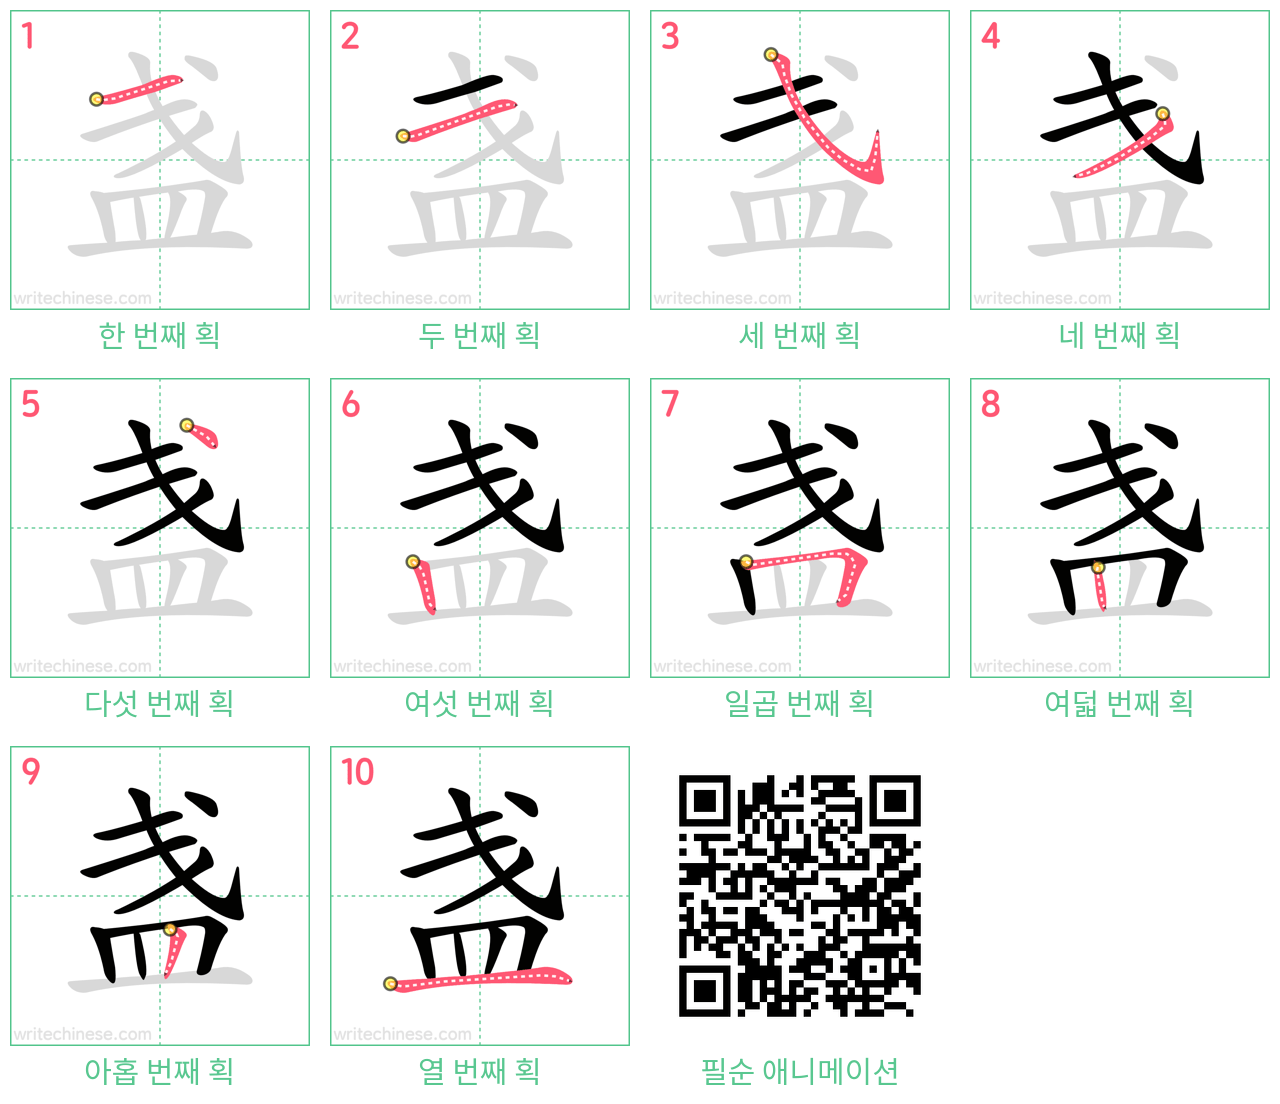 盏 step-by-step stroke order diagrams